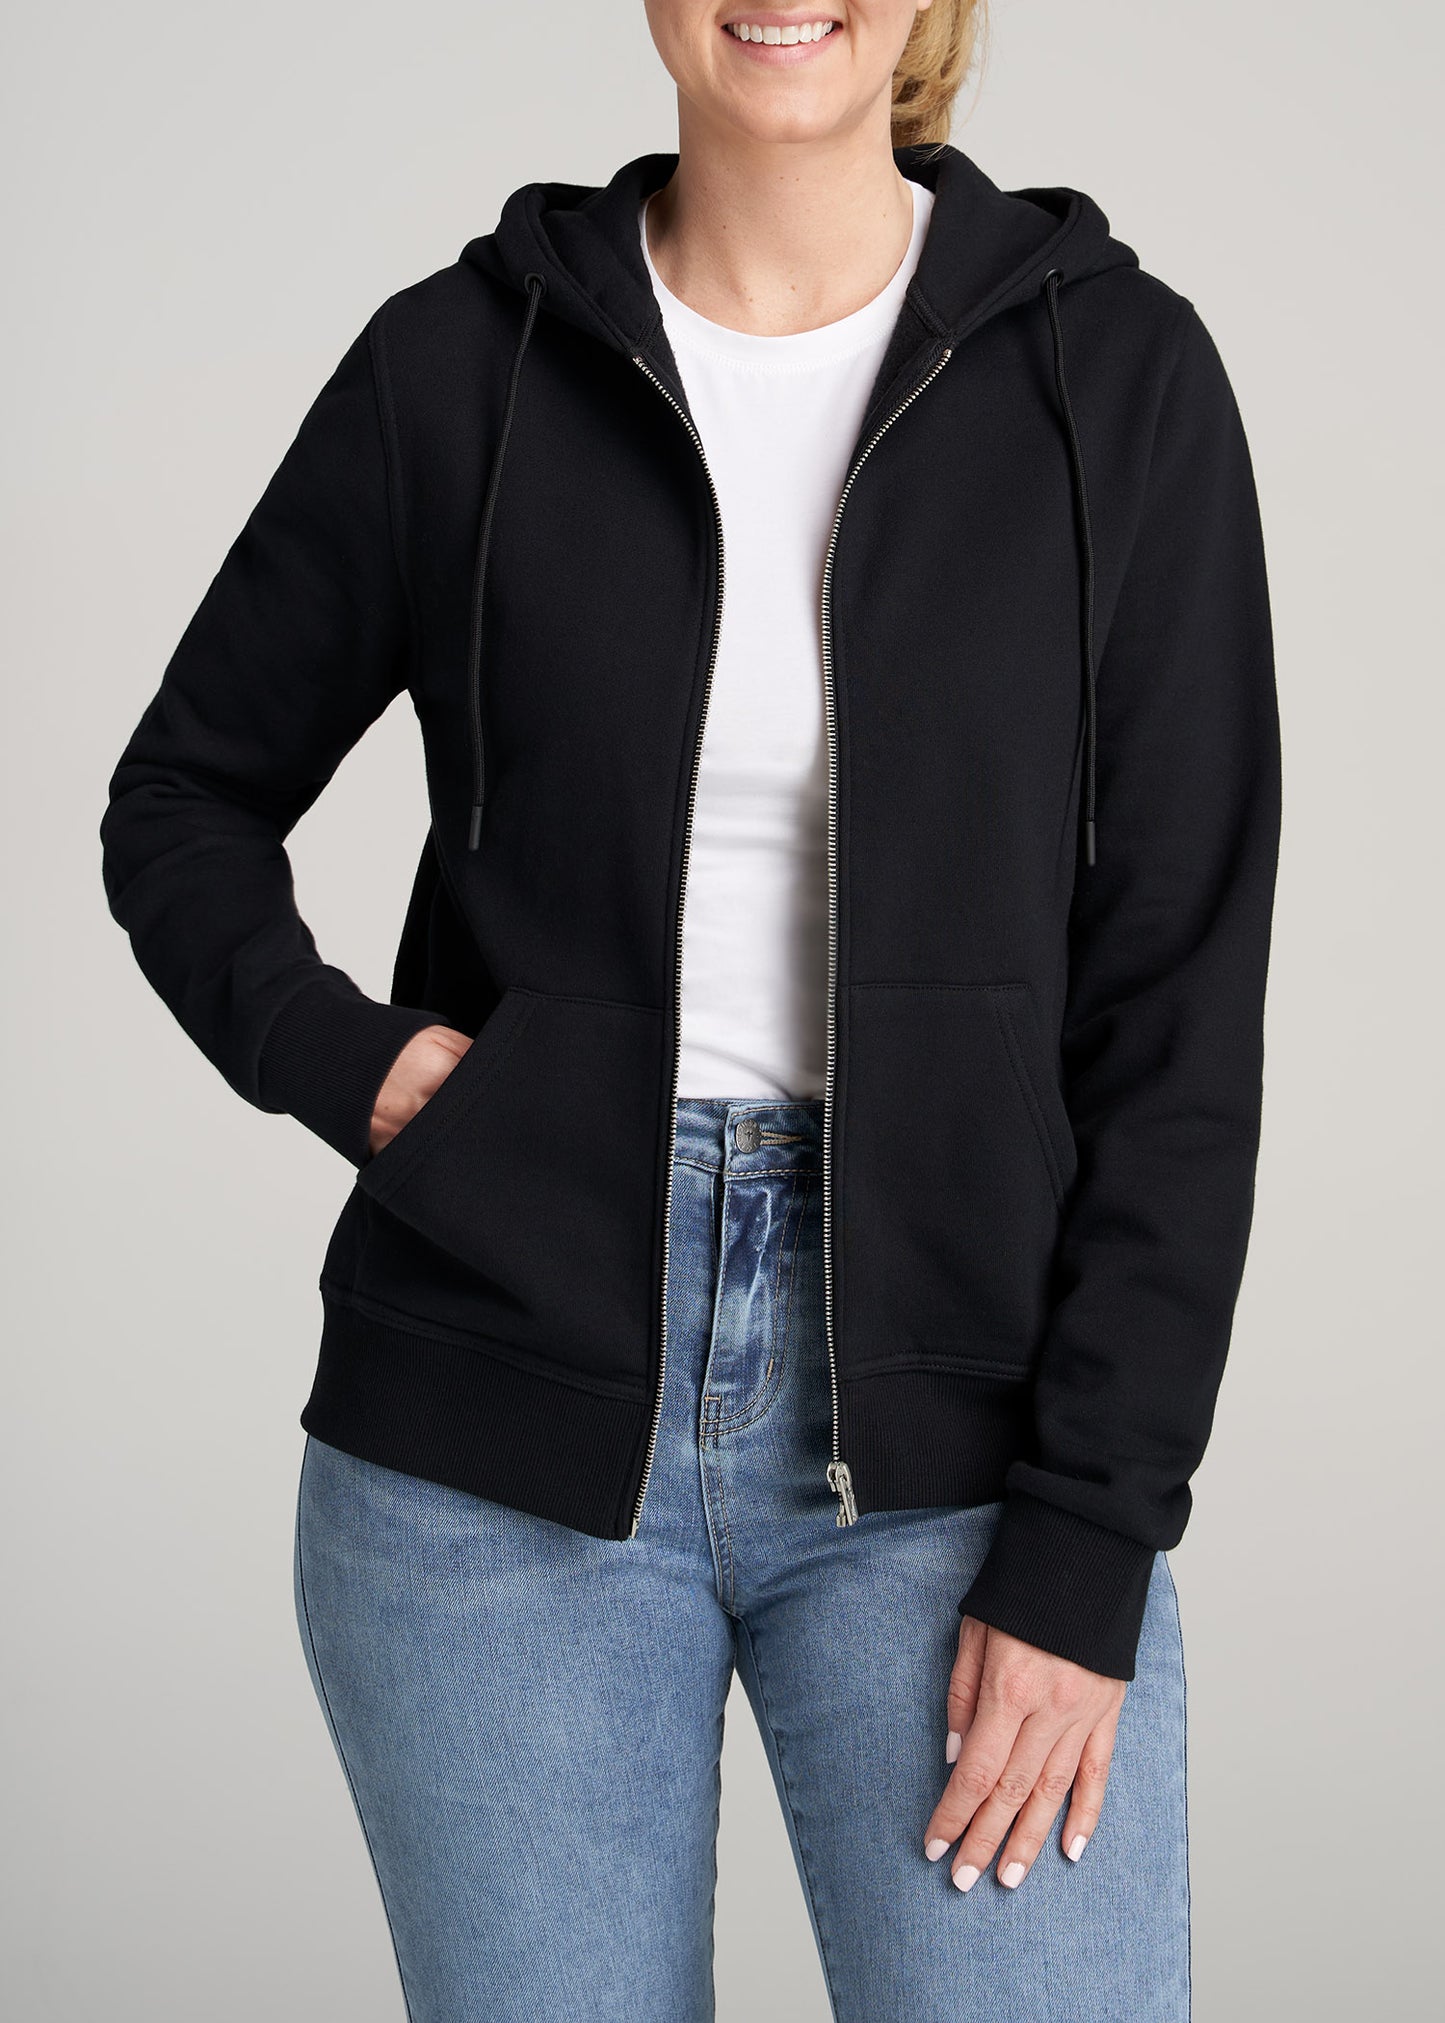 Women's Fleece Jackets & Hoodies